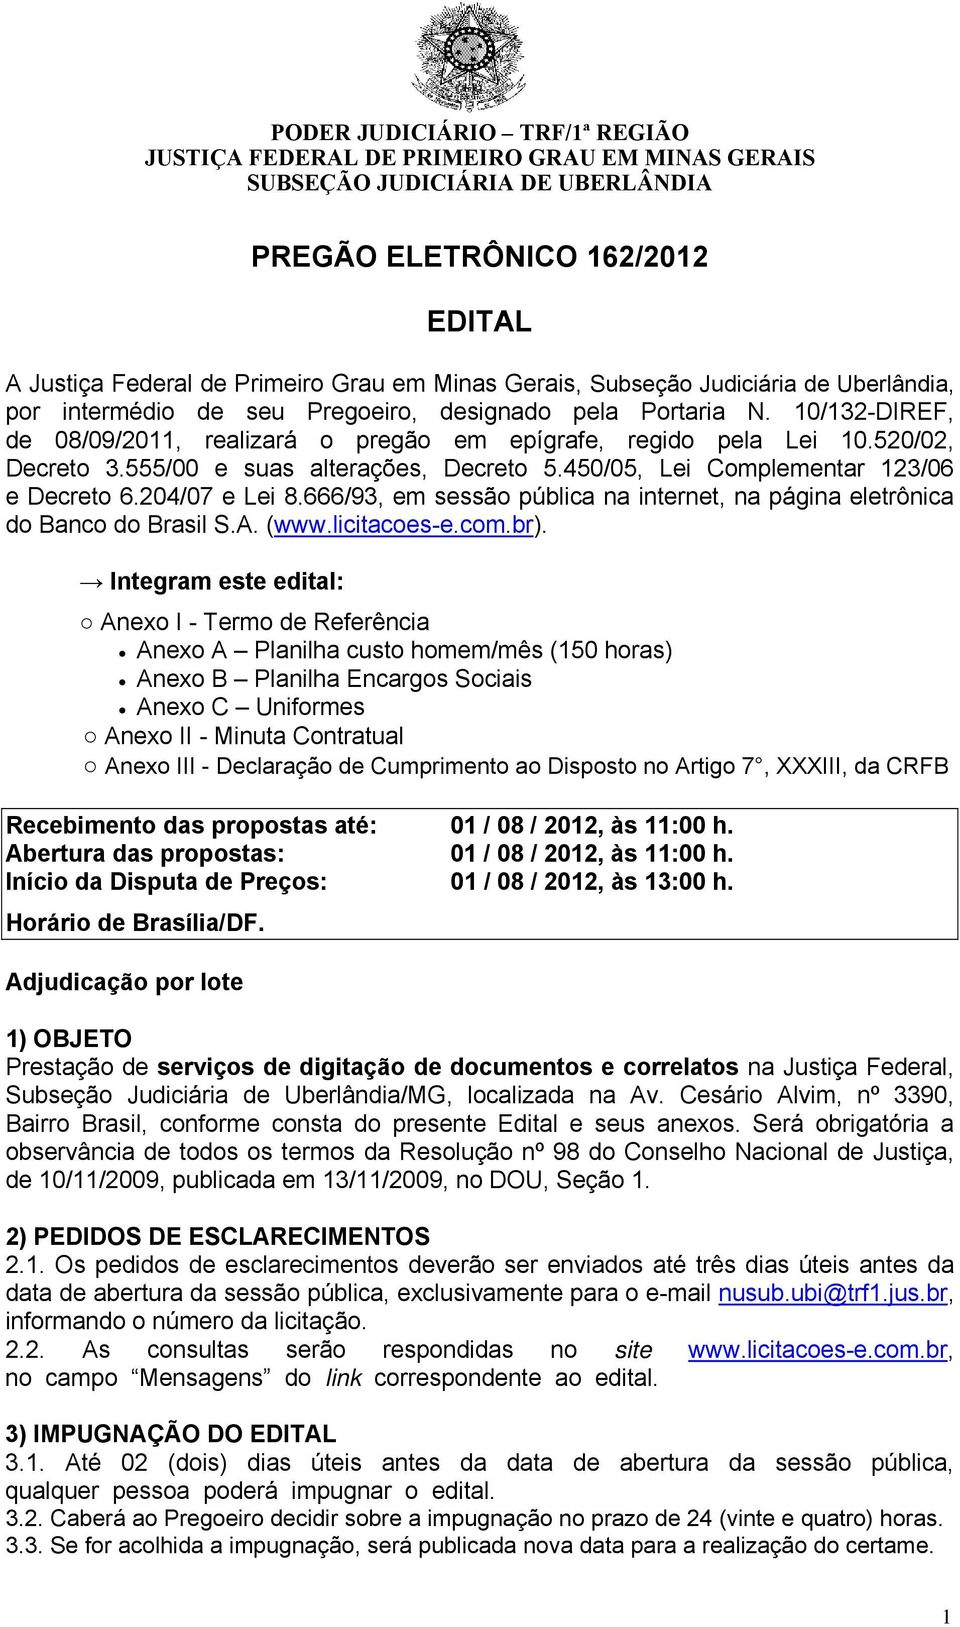 555/00 e suas alterações, Decreto 5.450/05, Lei Complementar 123/06 e Decreto 6.204/07 e Lei 8.666/93, em sessão pública na internet, na página eletrônica do Banco do Brasil S.A. (www.licitacoes-e.